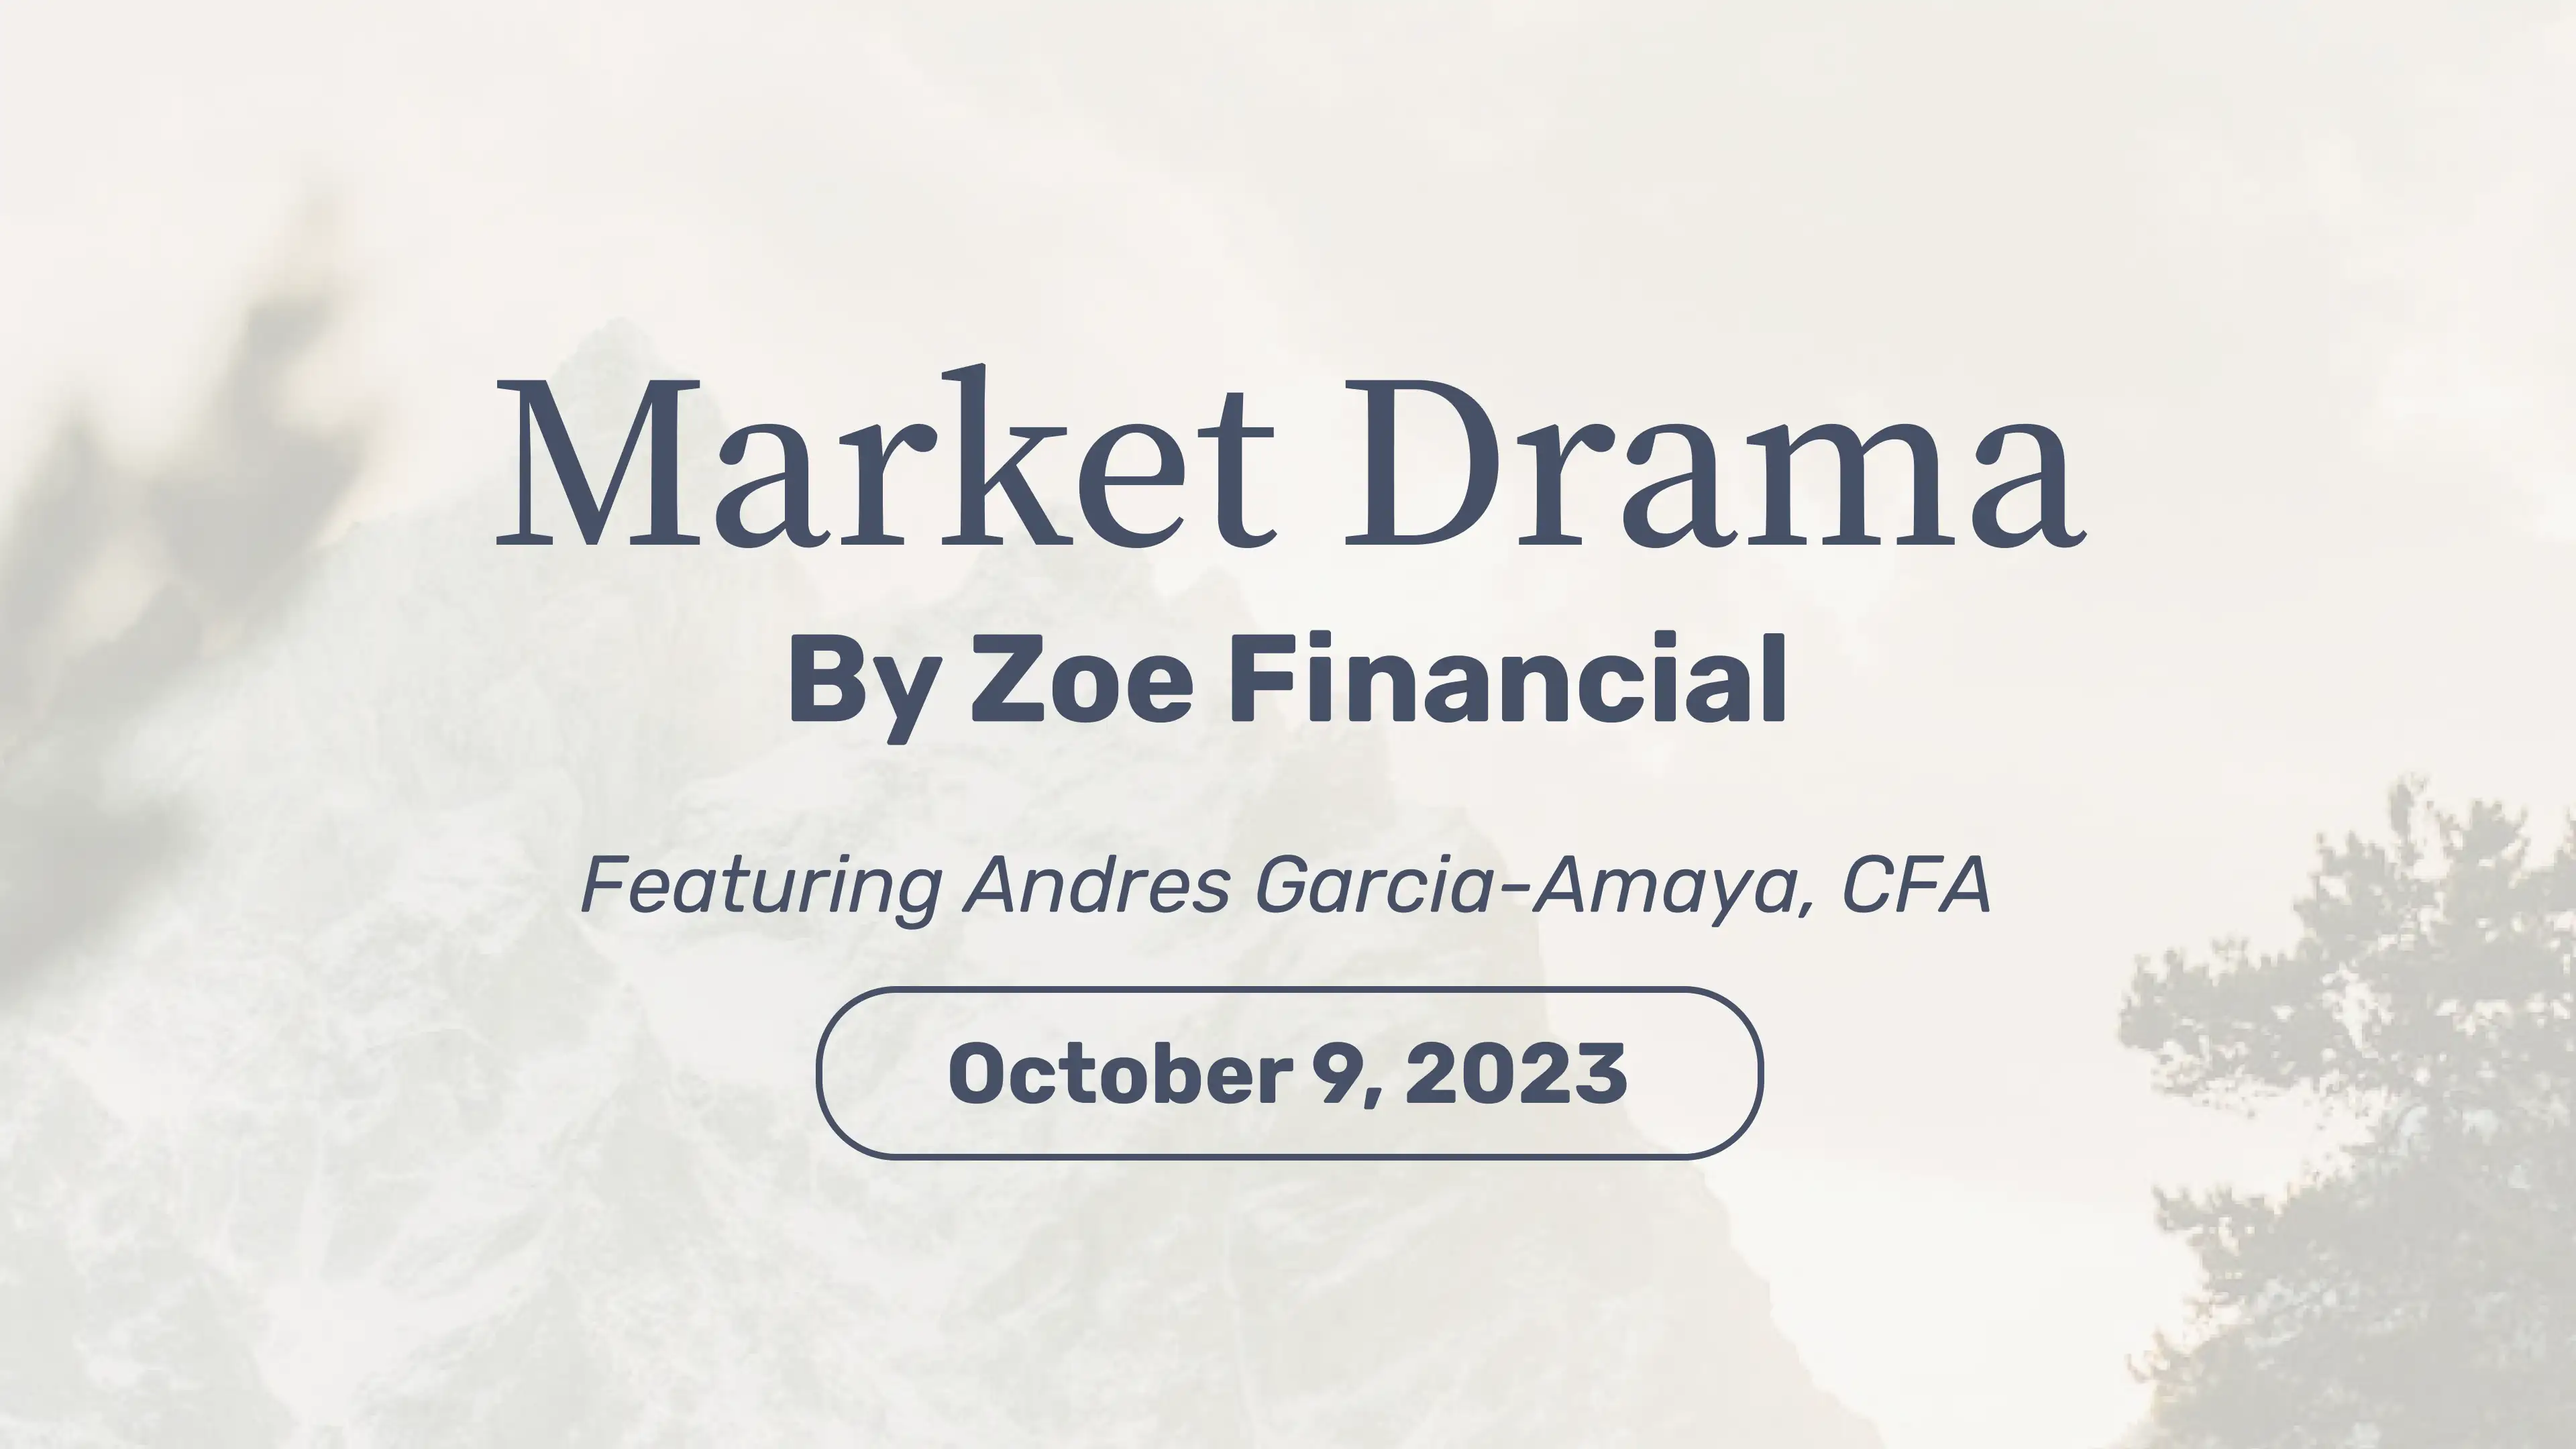 Market Drama October 9